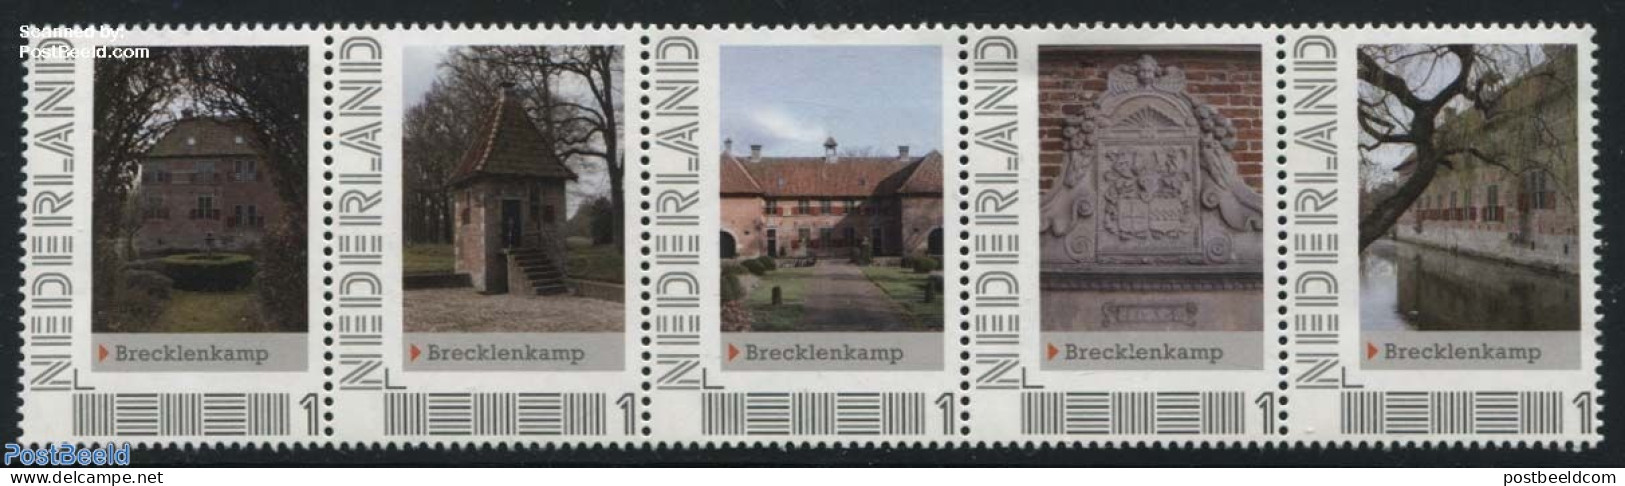 Netherlands - Personal Stamps TNT/PNL 2012 Brecklenkamp 5v [::::], Mint NH, Castles & Fortifications - Kastelen